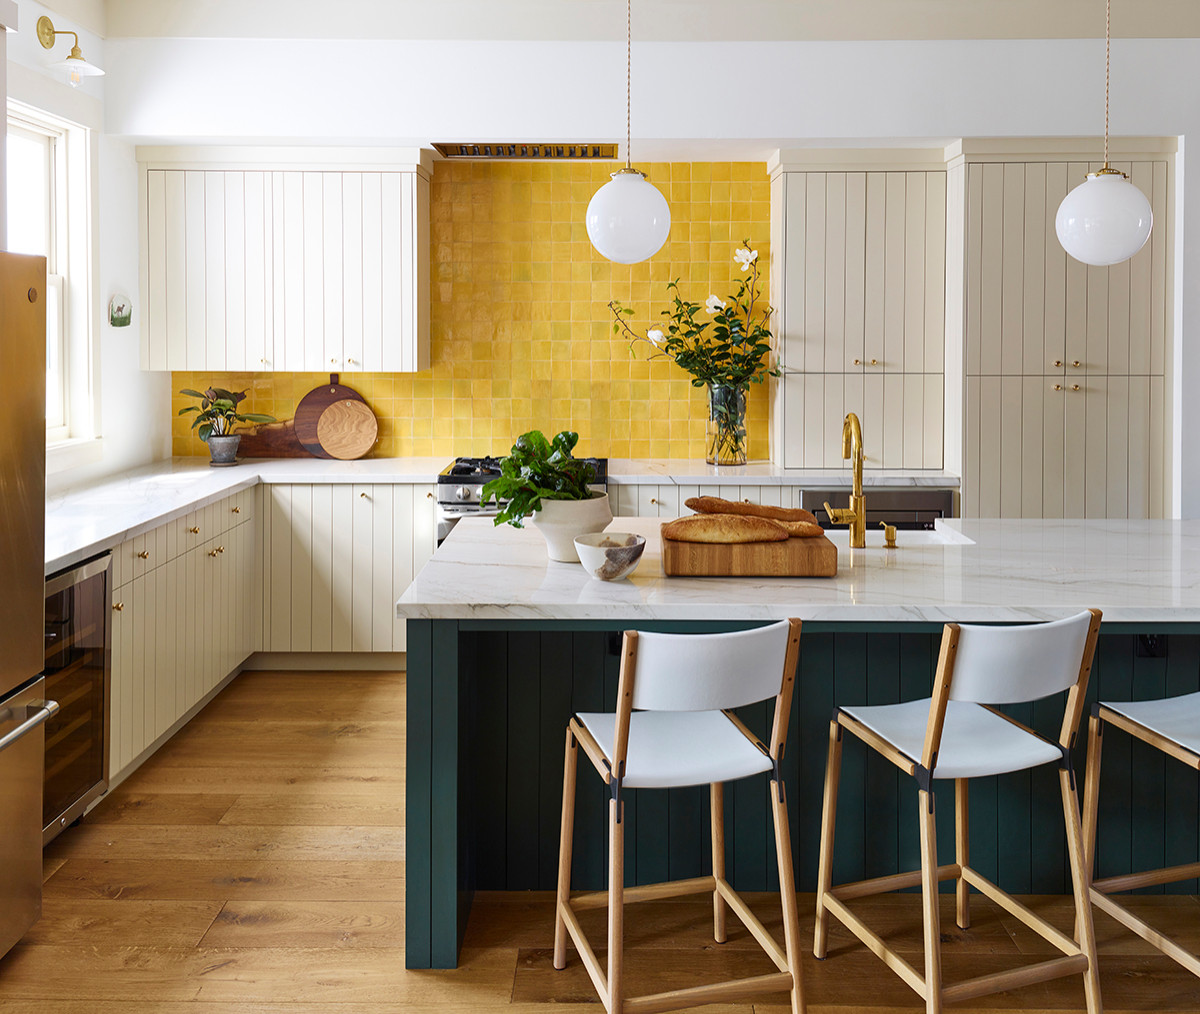 Phòng bếp tông màu trắng chủ đạo trở nên vô cùng cuốn hút bởi bức tường với những viên gạch màu vàng được ốp thủ công tỉ mỉ, kết hợp với đảo bếp màu xanh đậm cho cái nhìn cực kỳ có chiều sâu.